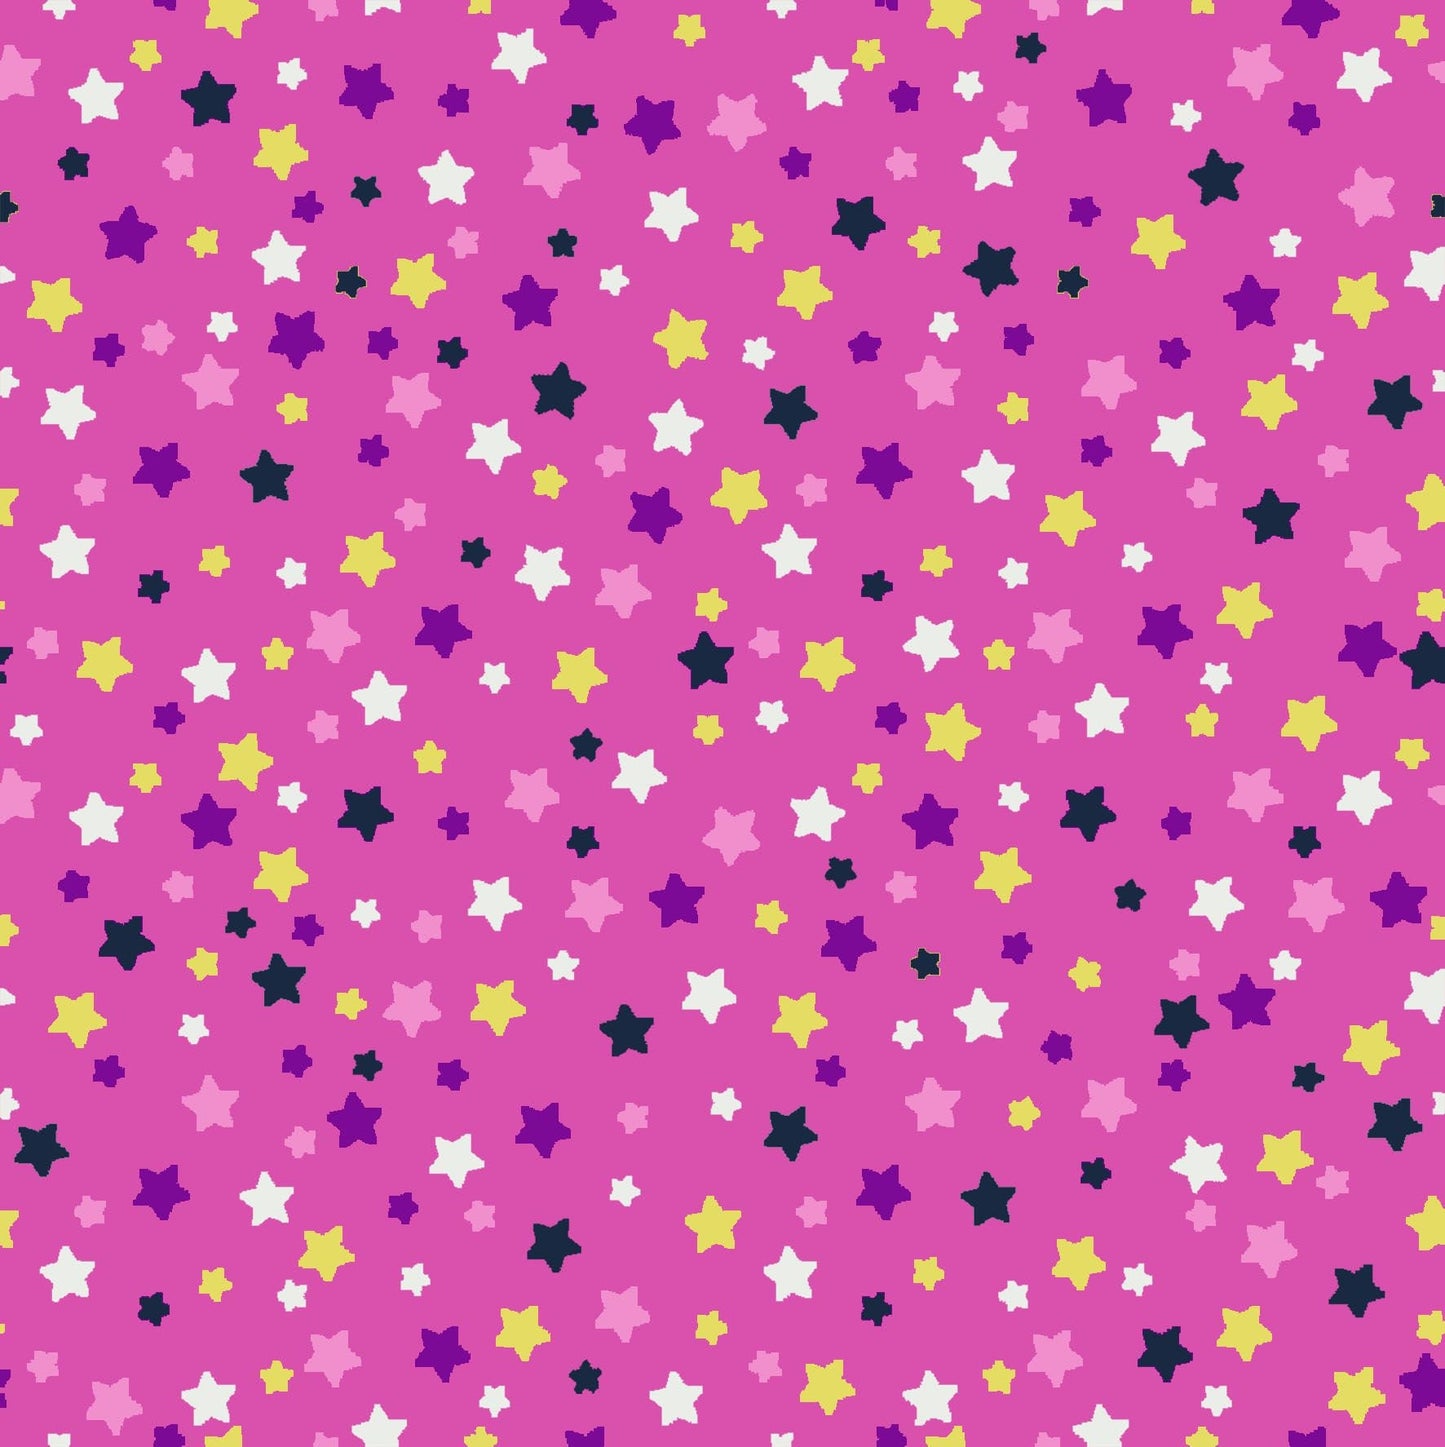 Avalana Knits Stars on Pink 19-519 Cotton/Spandex Knit